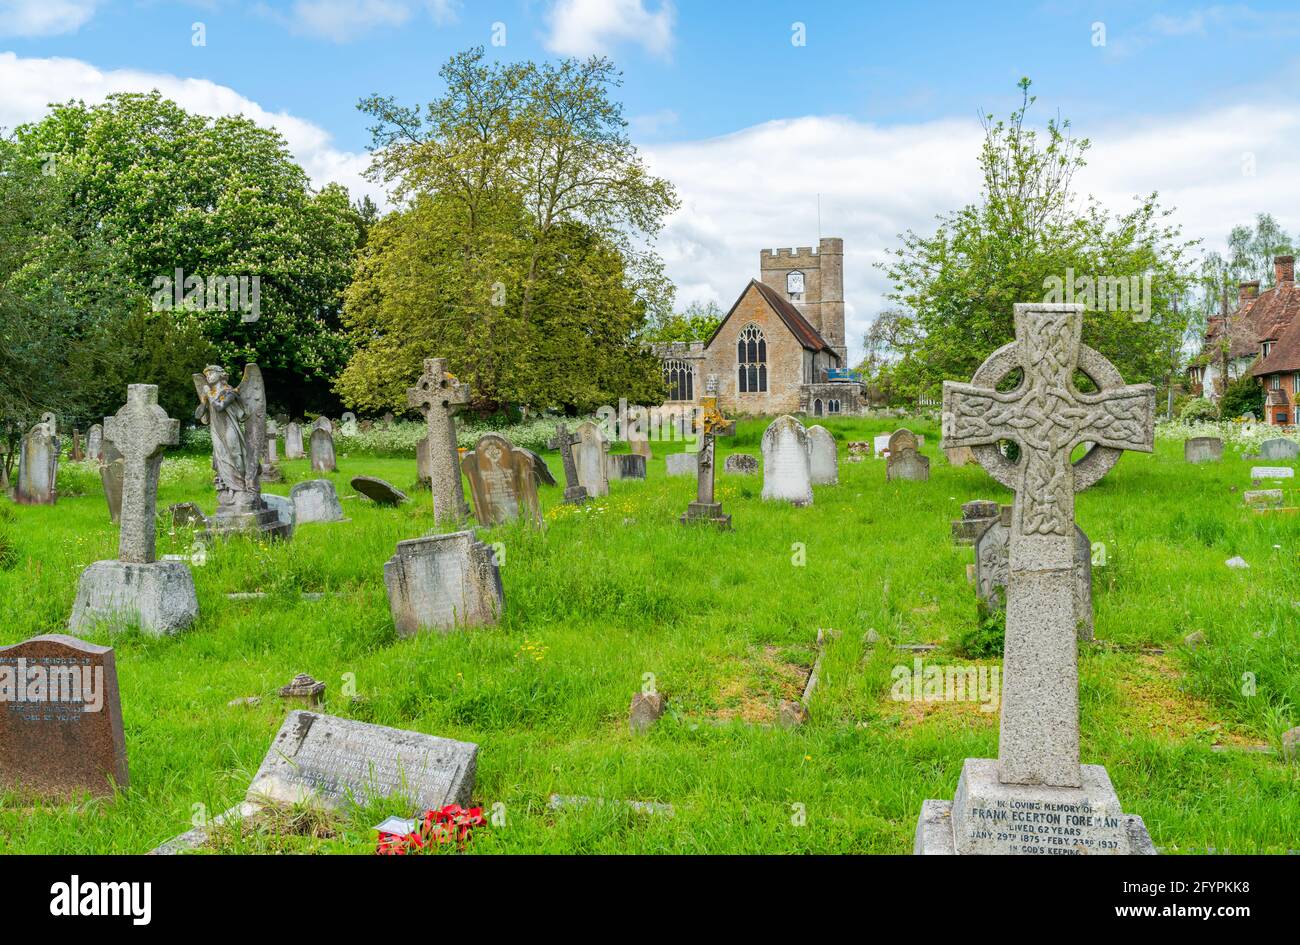 HEADCORN, Royaume-Uni - 26 MAI 2021 : ancien cimetière de l'église Saint-Pierre et Saint-Paul, rang I, église paroissiale de Headcorn, Kent Banque D'Images